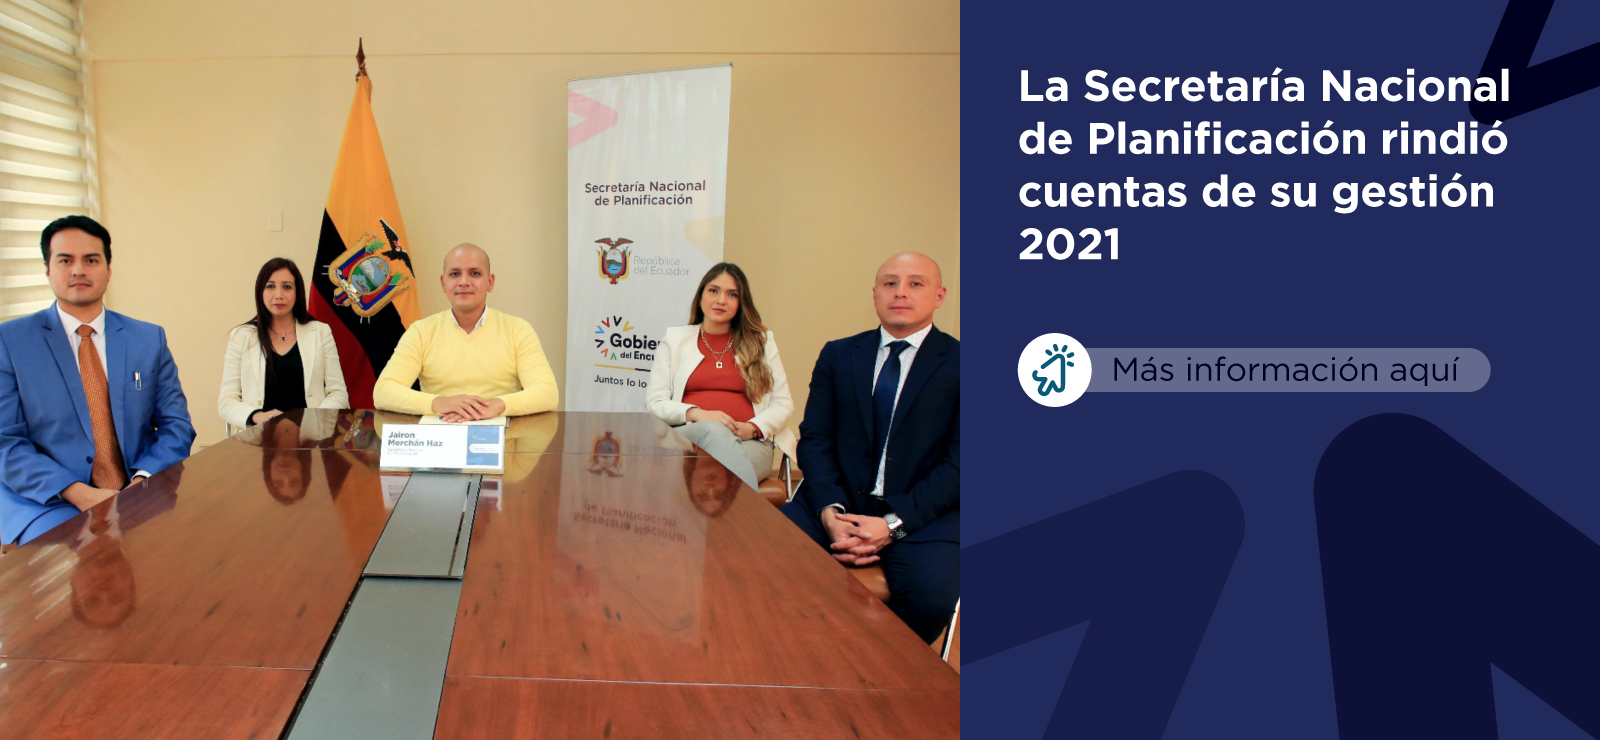 La Secretaría Nacional de Planificación rindió cuentas de su gestión 2021